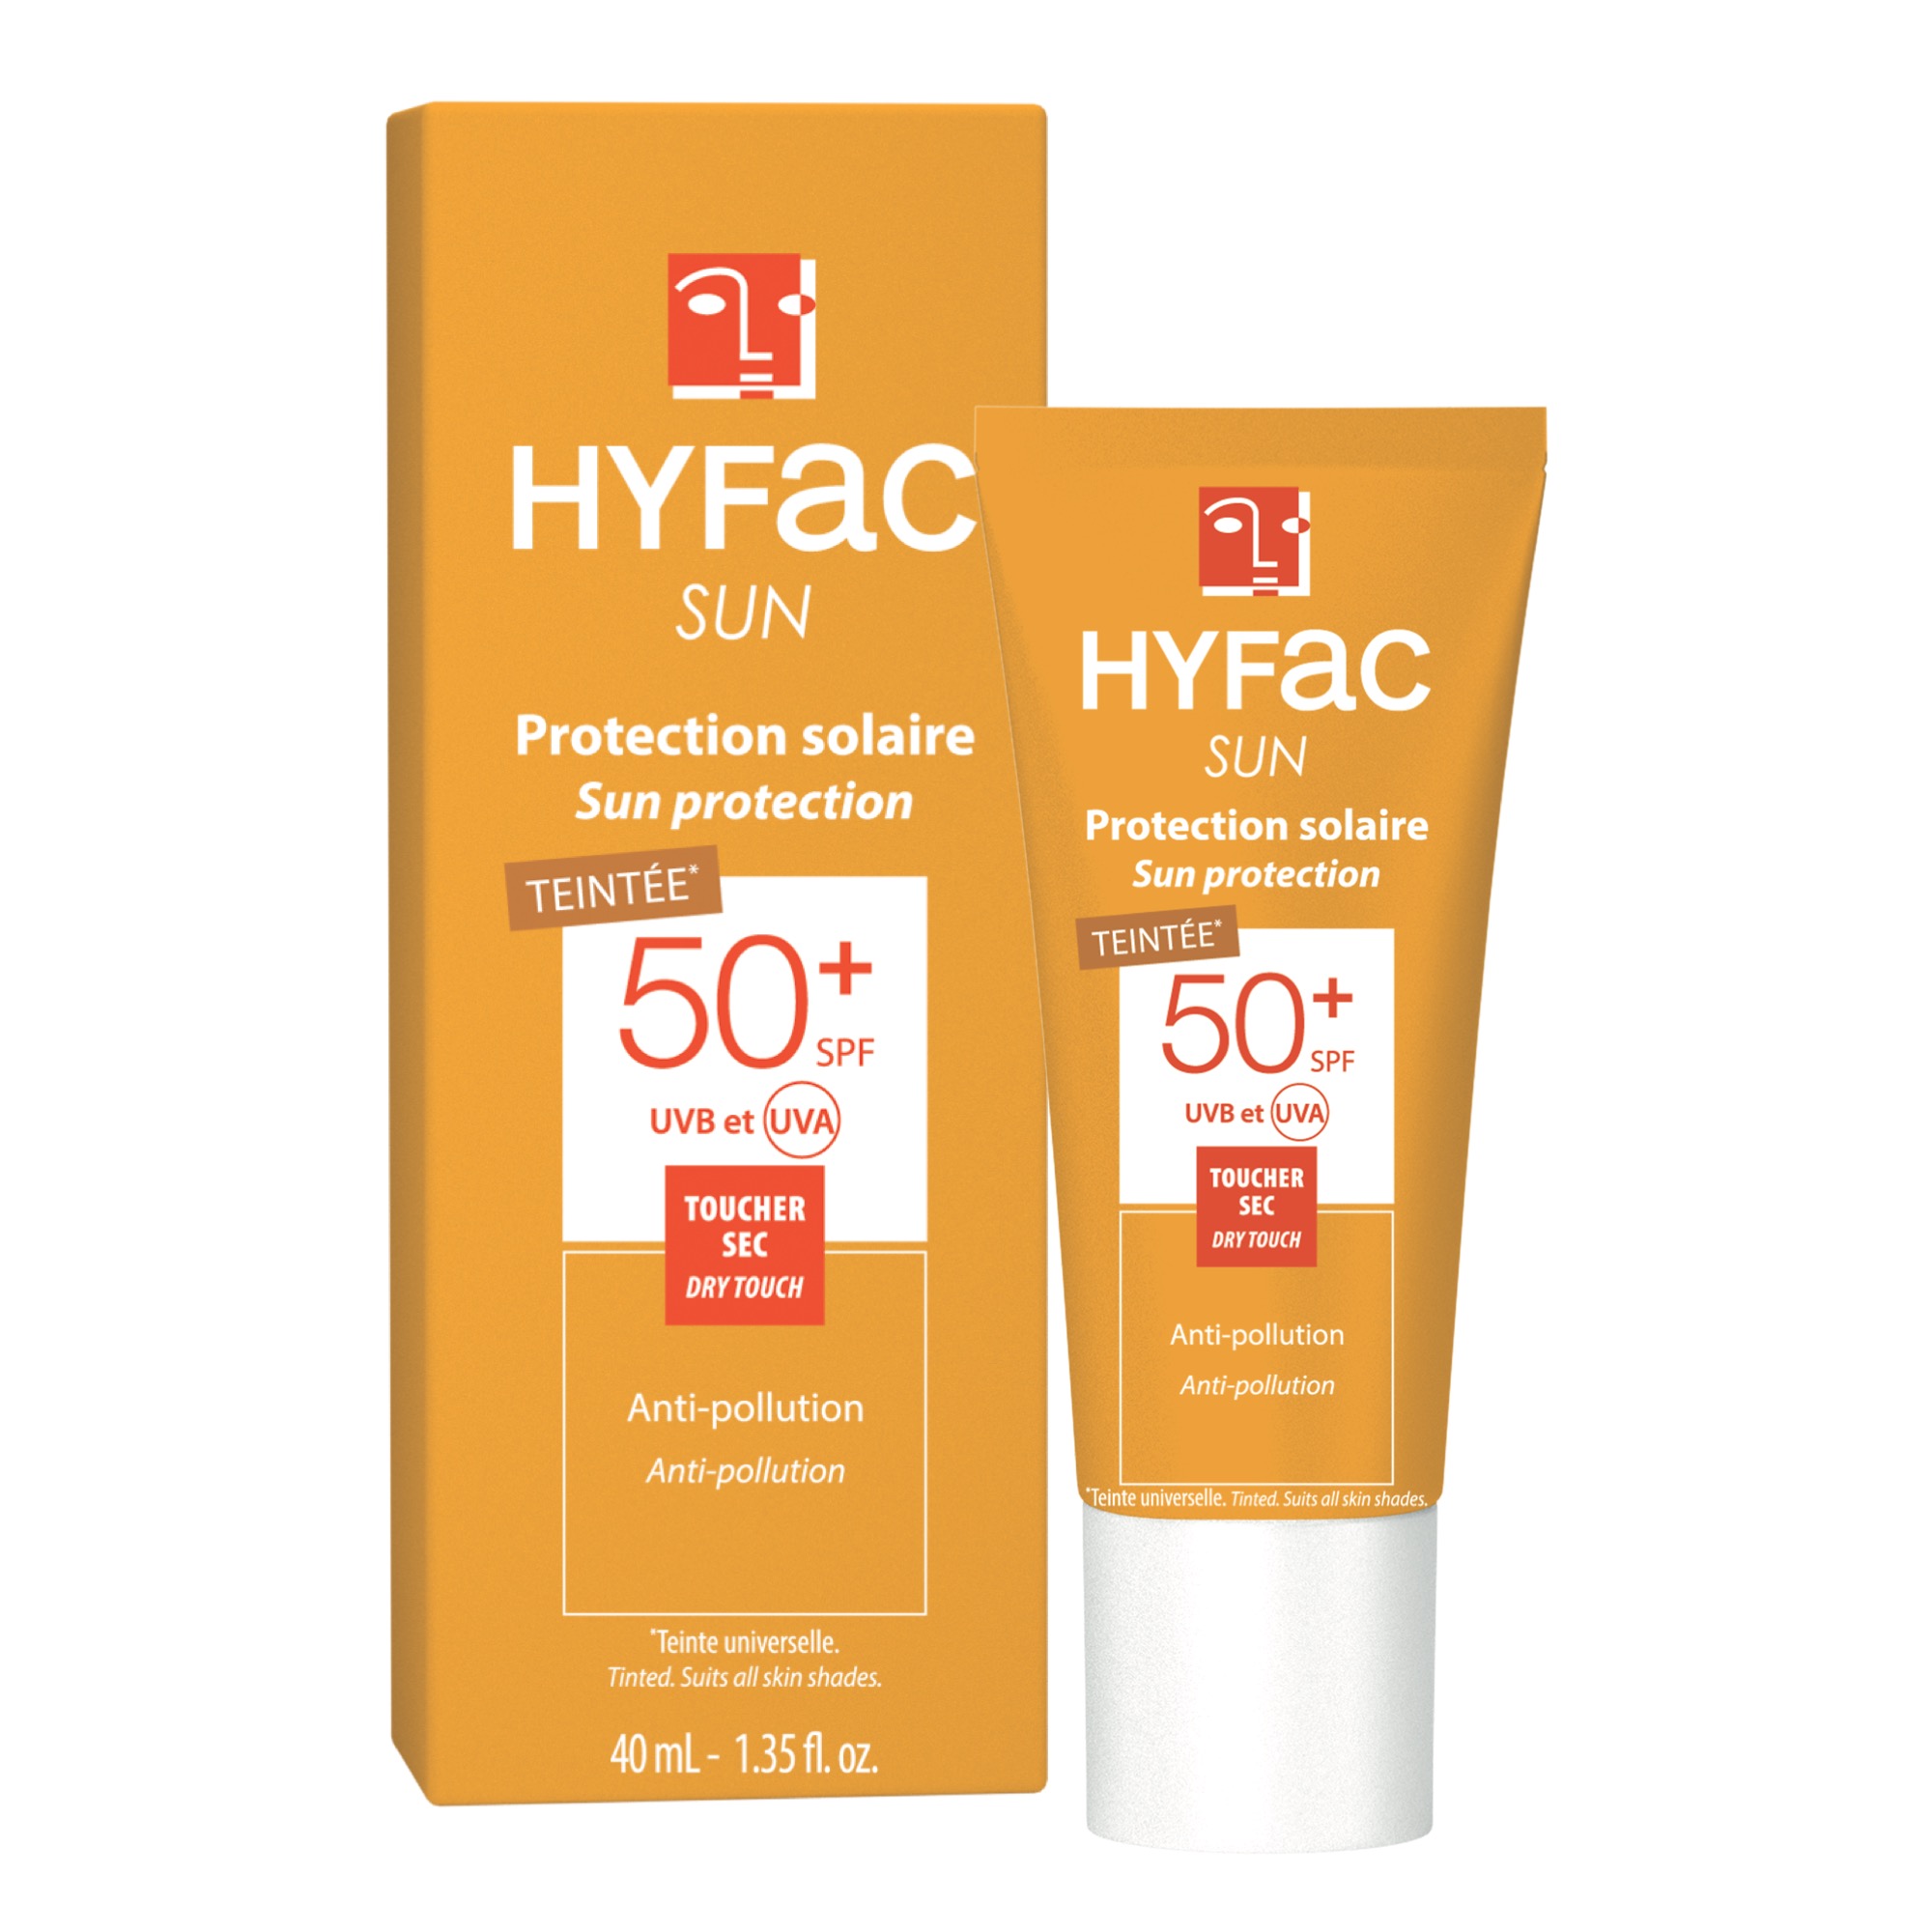 HYFAC SUN Protection solaire teintée SPF50+